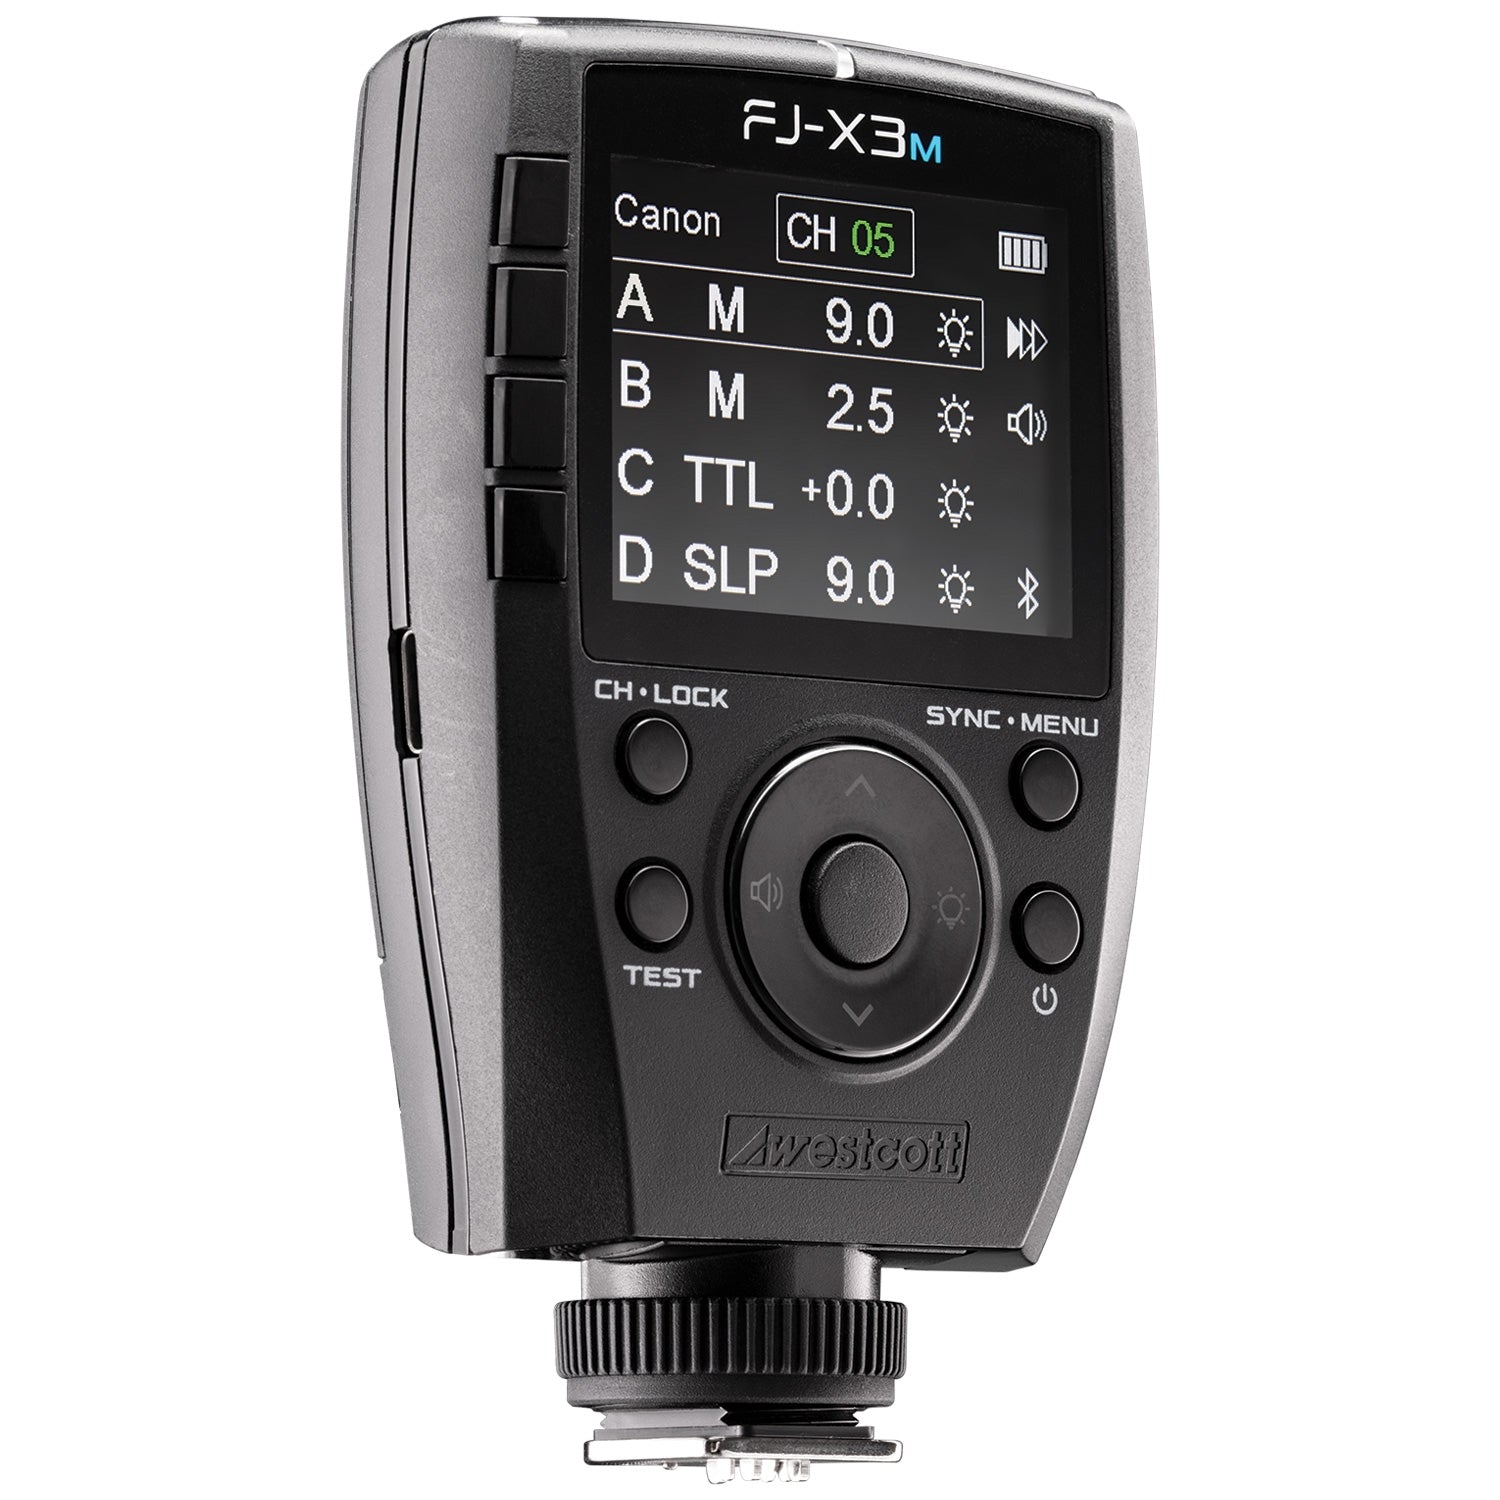 FJ-X3 M Universal Wireless Flash Trigger